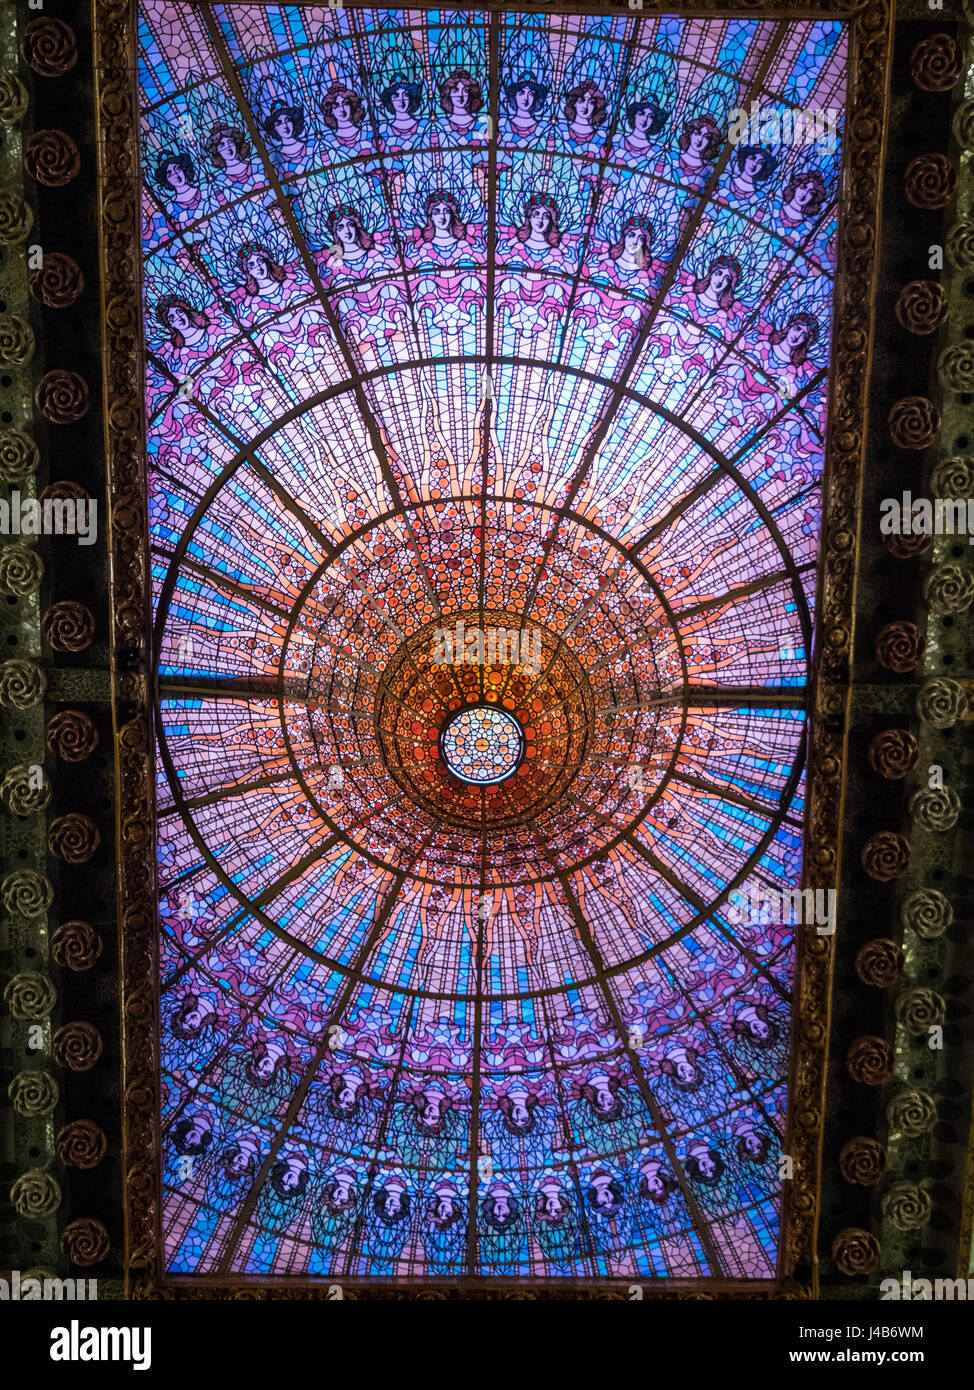 Vitrail de lucarne lucarne de Palau de la Música Catalana, Barcelone Espagne. Banque D'Images